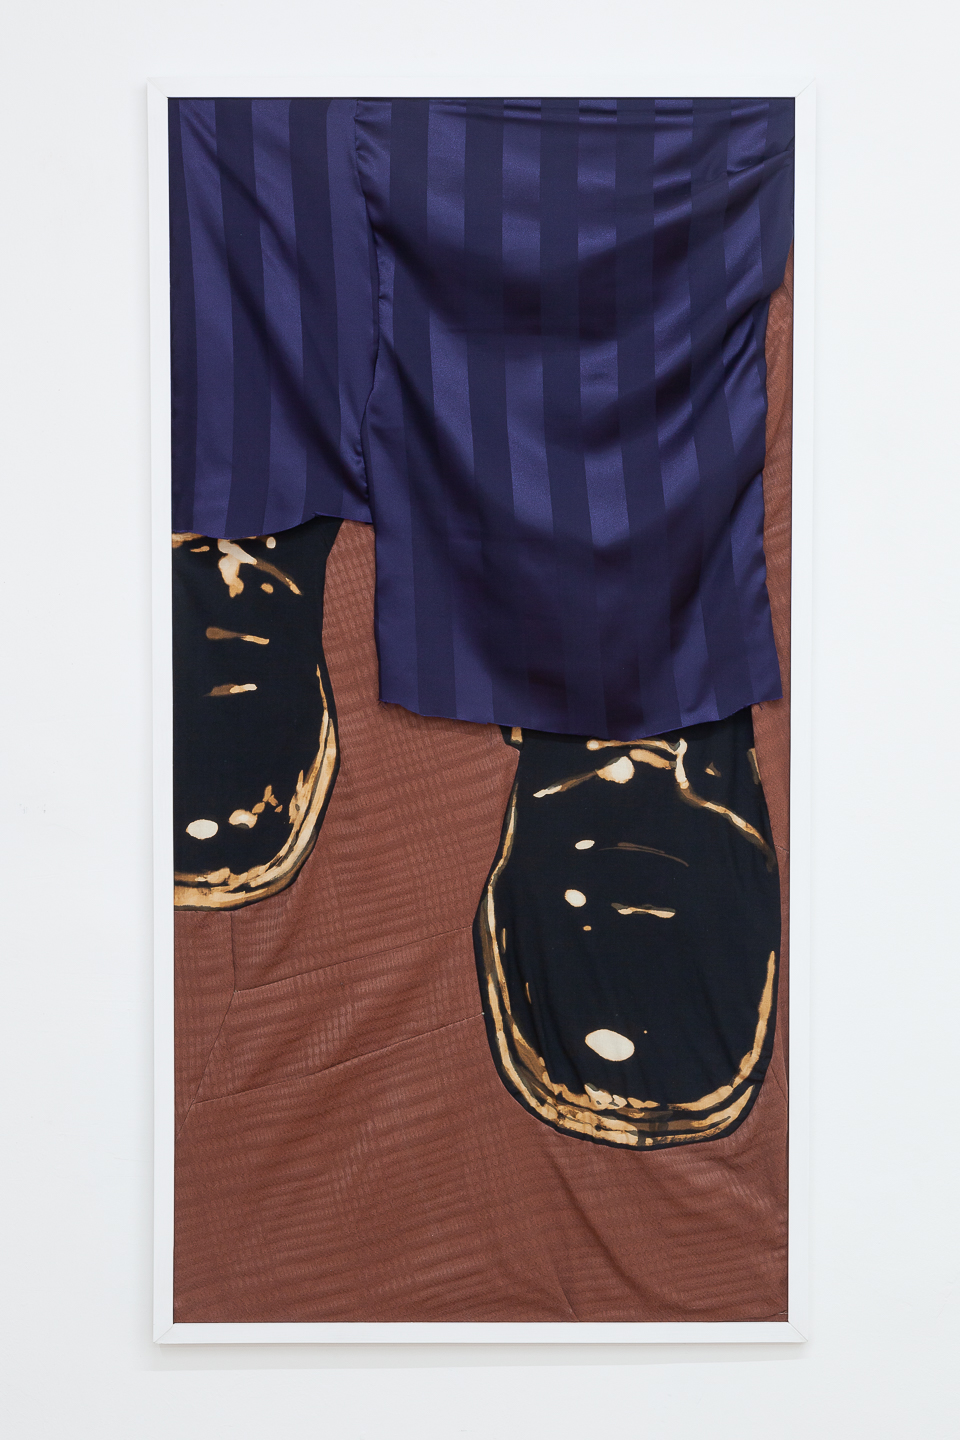 Ellie de Verdier, Carpet, 2020, bleach on textile, 120x60cm